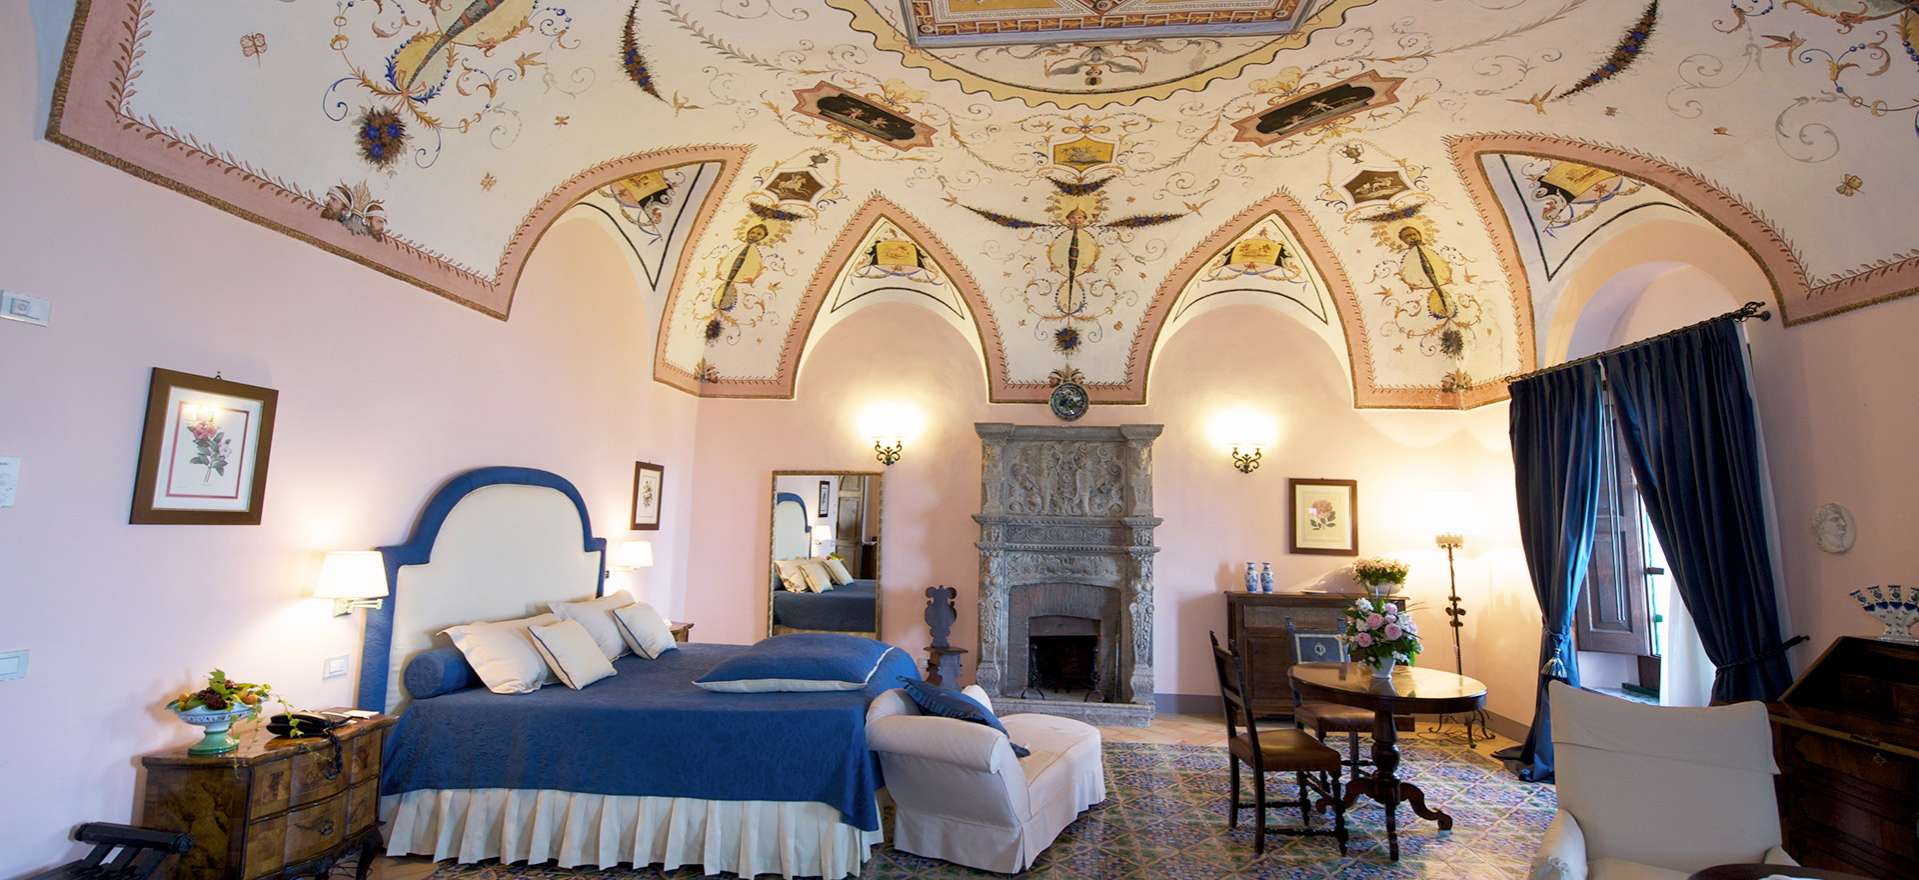 Voir la page de l'établissement "Hotel Villa Cimbrone"